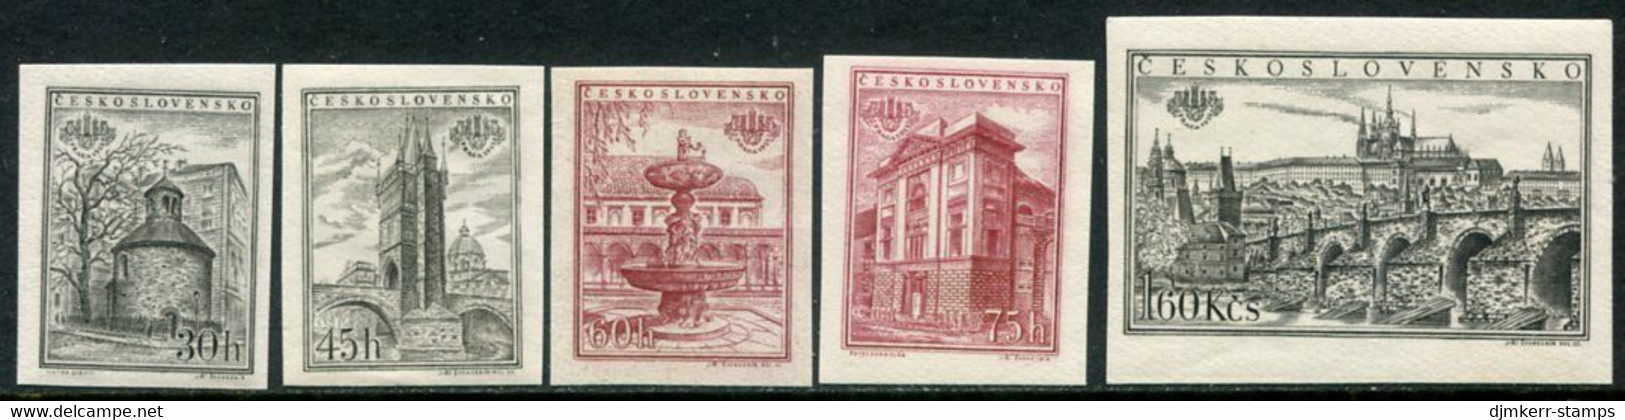 CZECHOSLOVAKIA 1955 Praga 1955 Stamp Exhibition Imperforate Singles Ex Block MNH / **.  Michel 934-38B - Ungebraucht